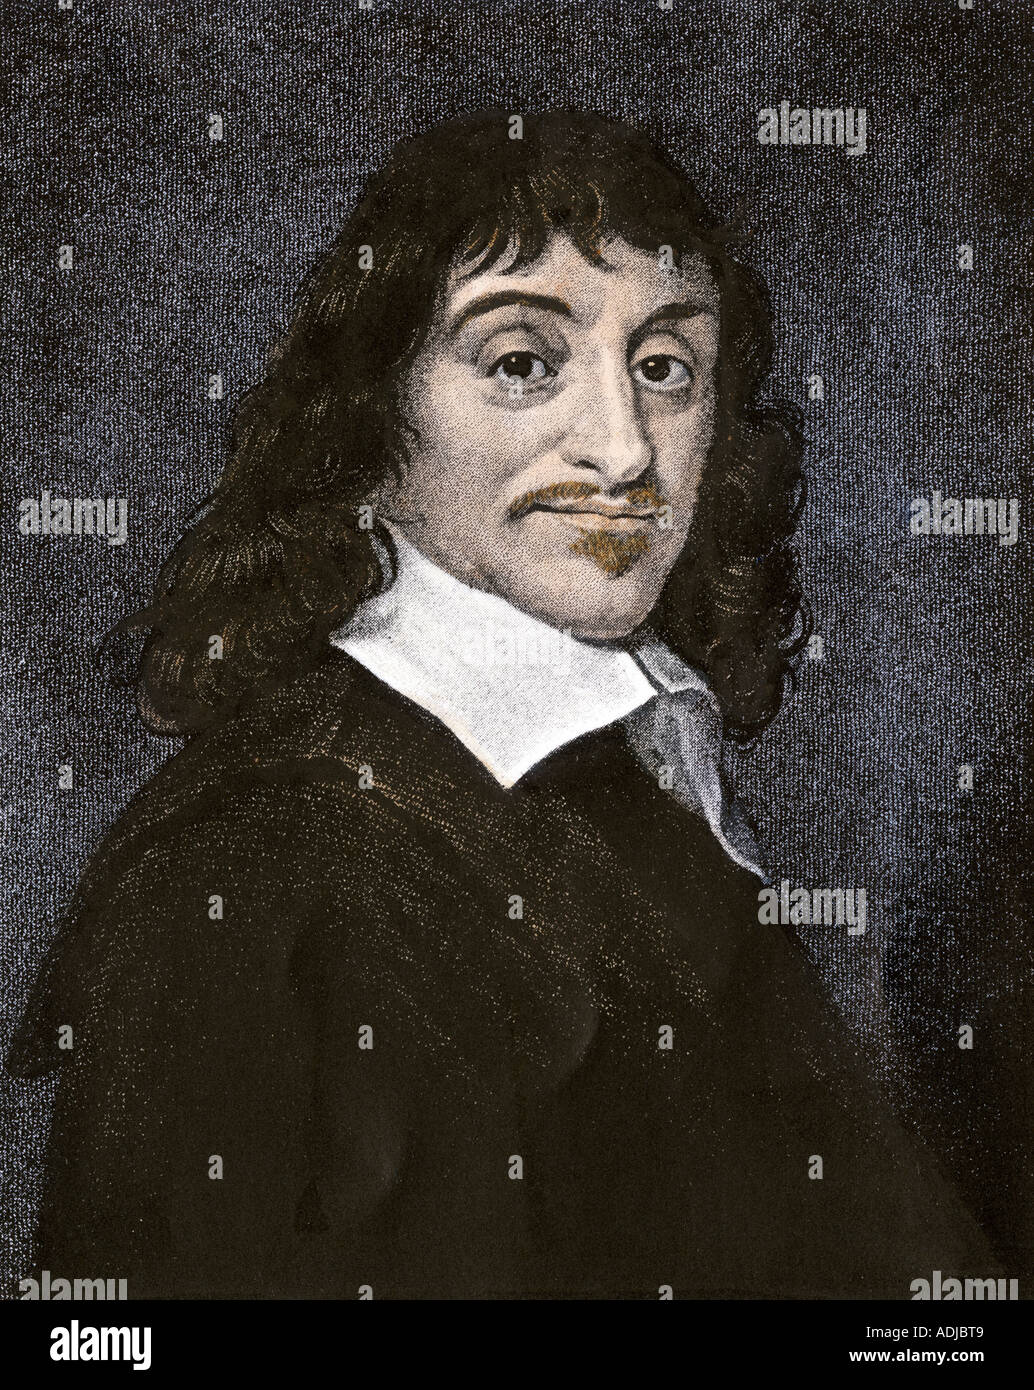 Rene Descartes. Hand-colored engraving Stock Photo